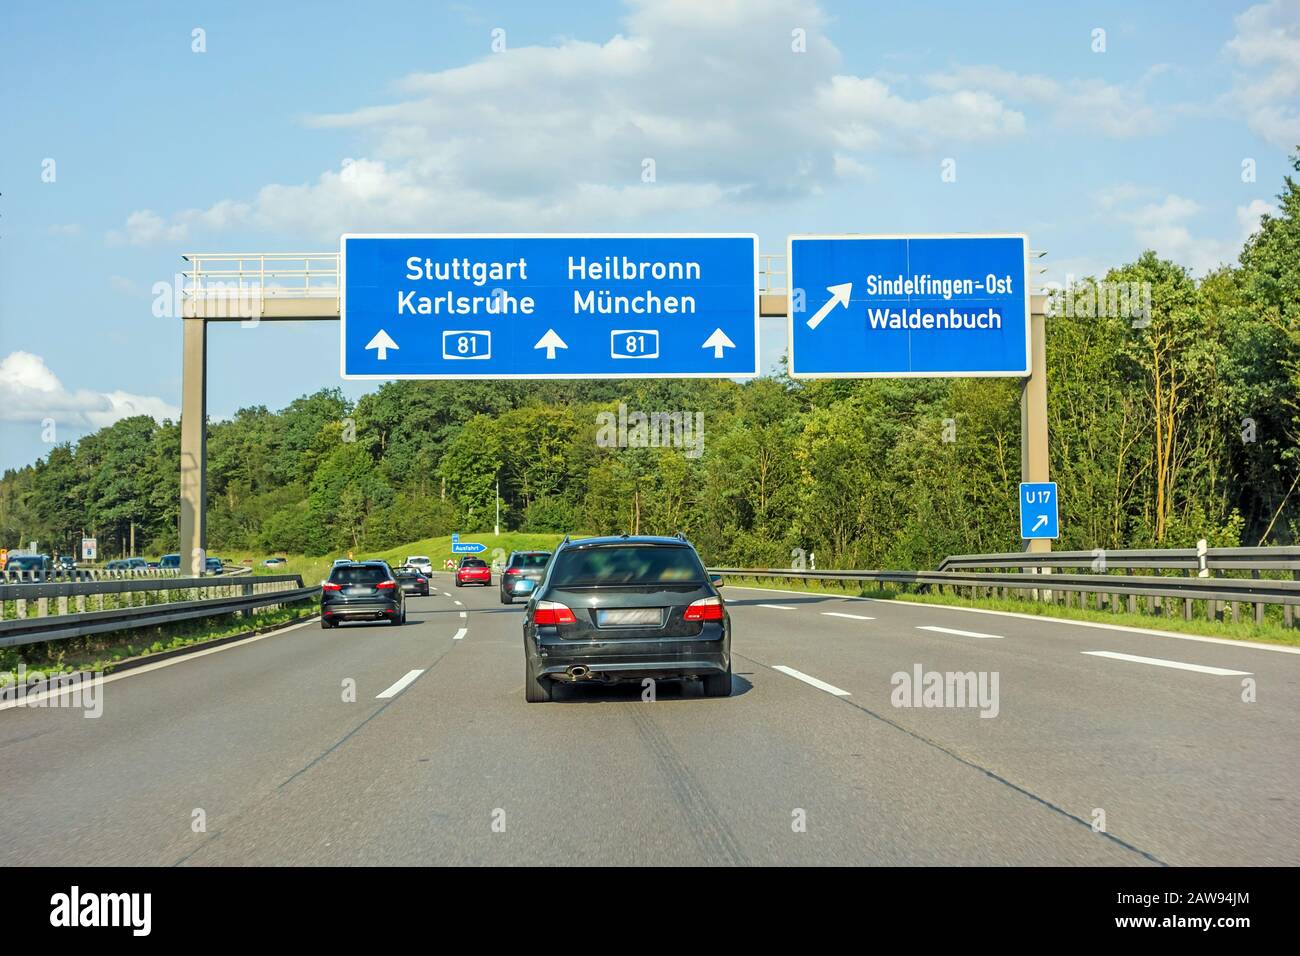 motorway road sign on (Autobahn 81 / A 81 / E 531) freeway interchange Stuttgart / Karlsruhe - Heilbronn / Munich (Munchen) - exit Sindelfingen / Wald Stock Photo